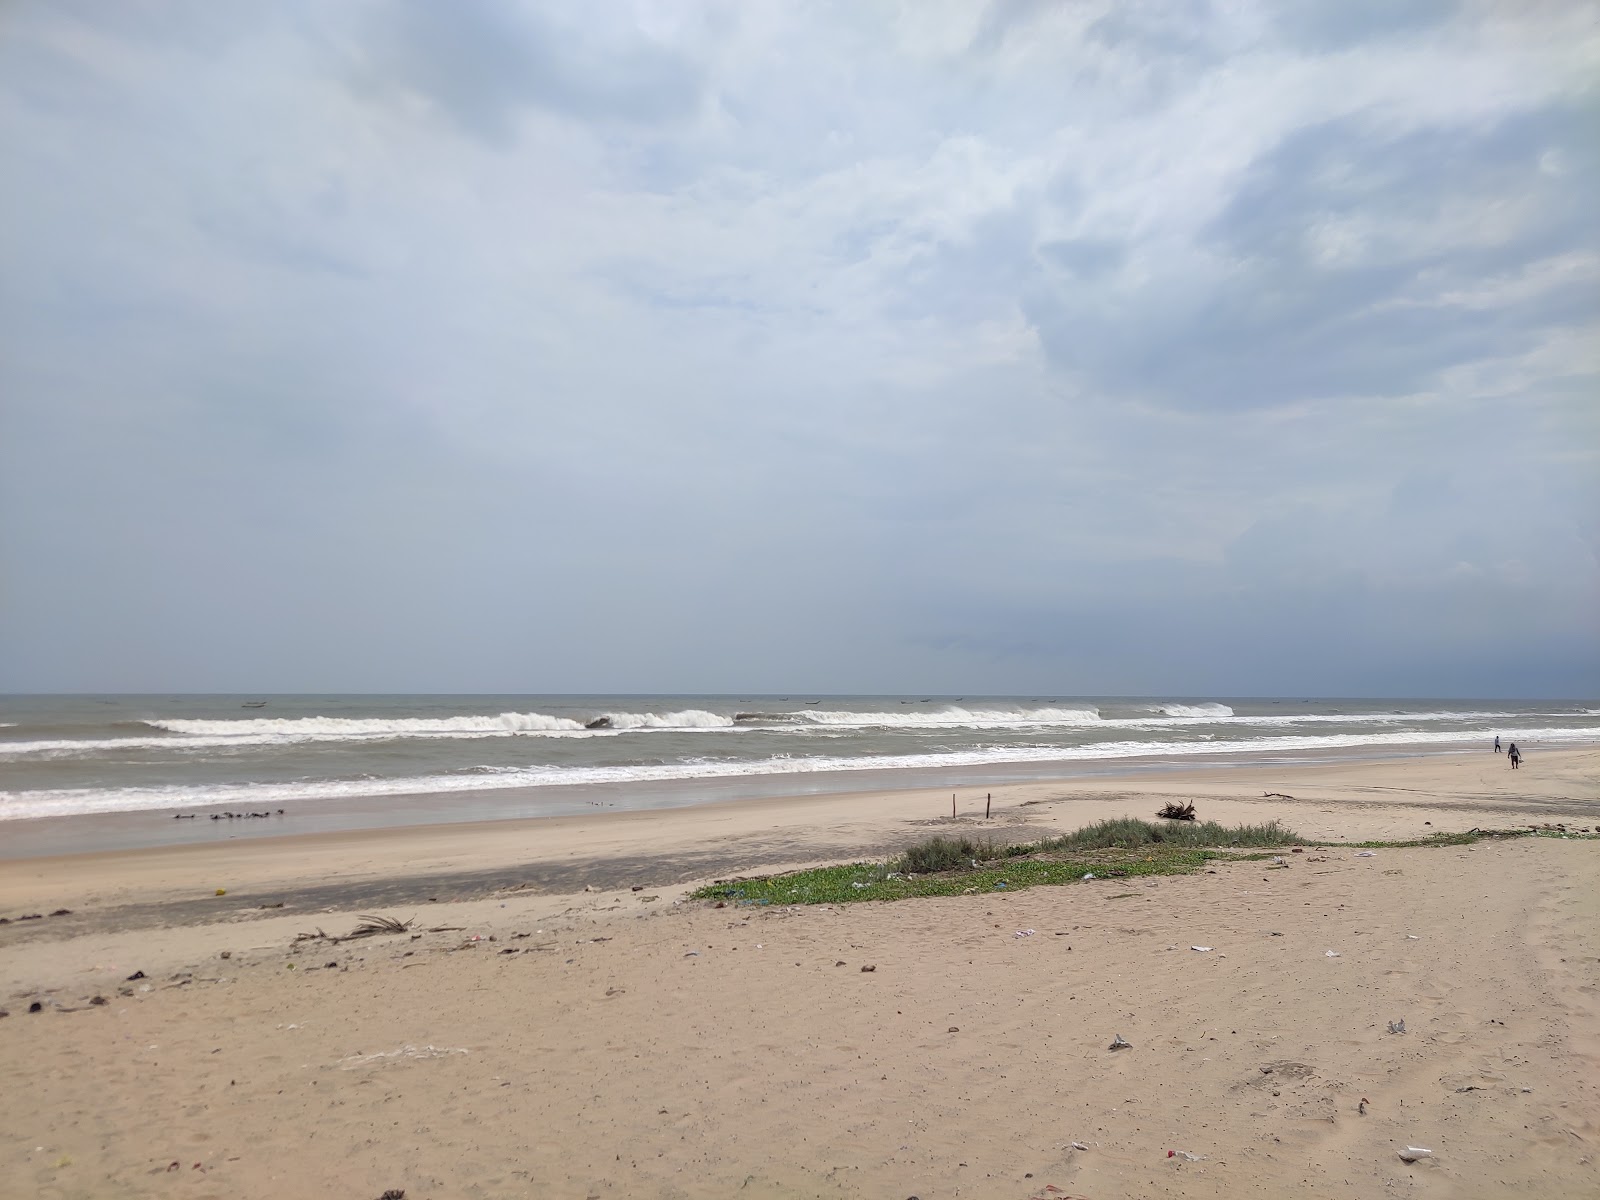 Danvaipeta Beach'in fotoğrafı geniş plaj ile birlikte